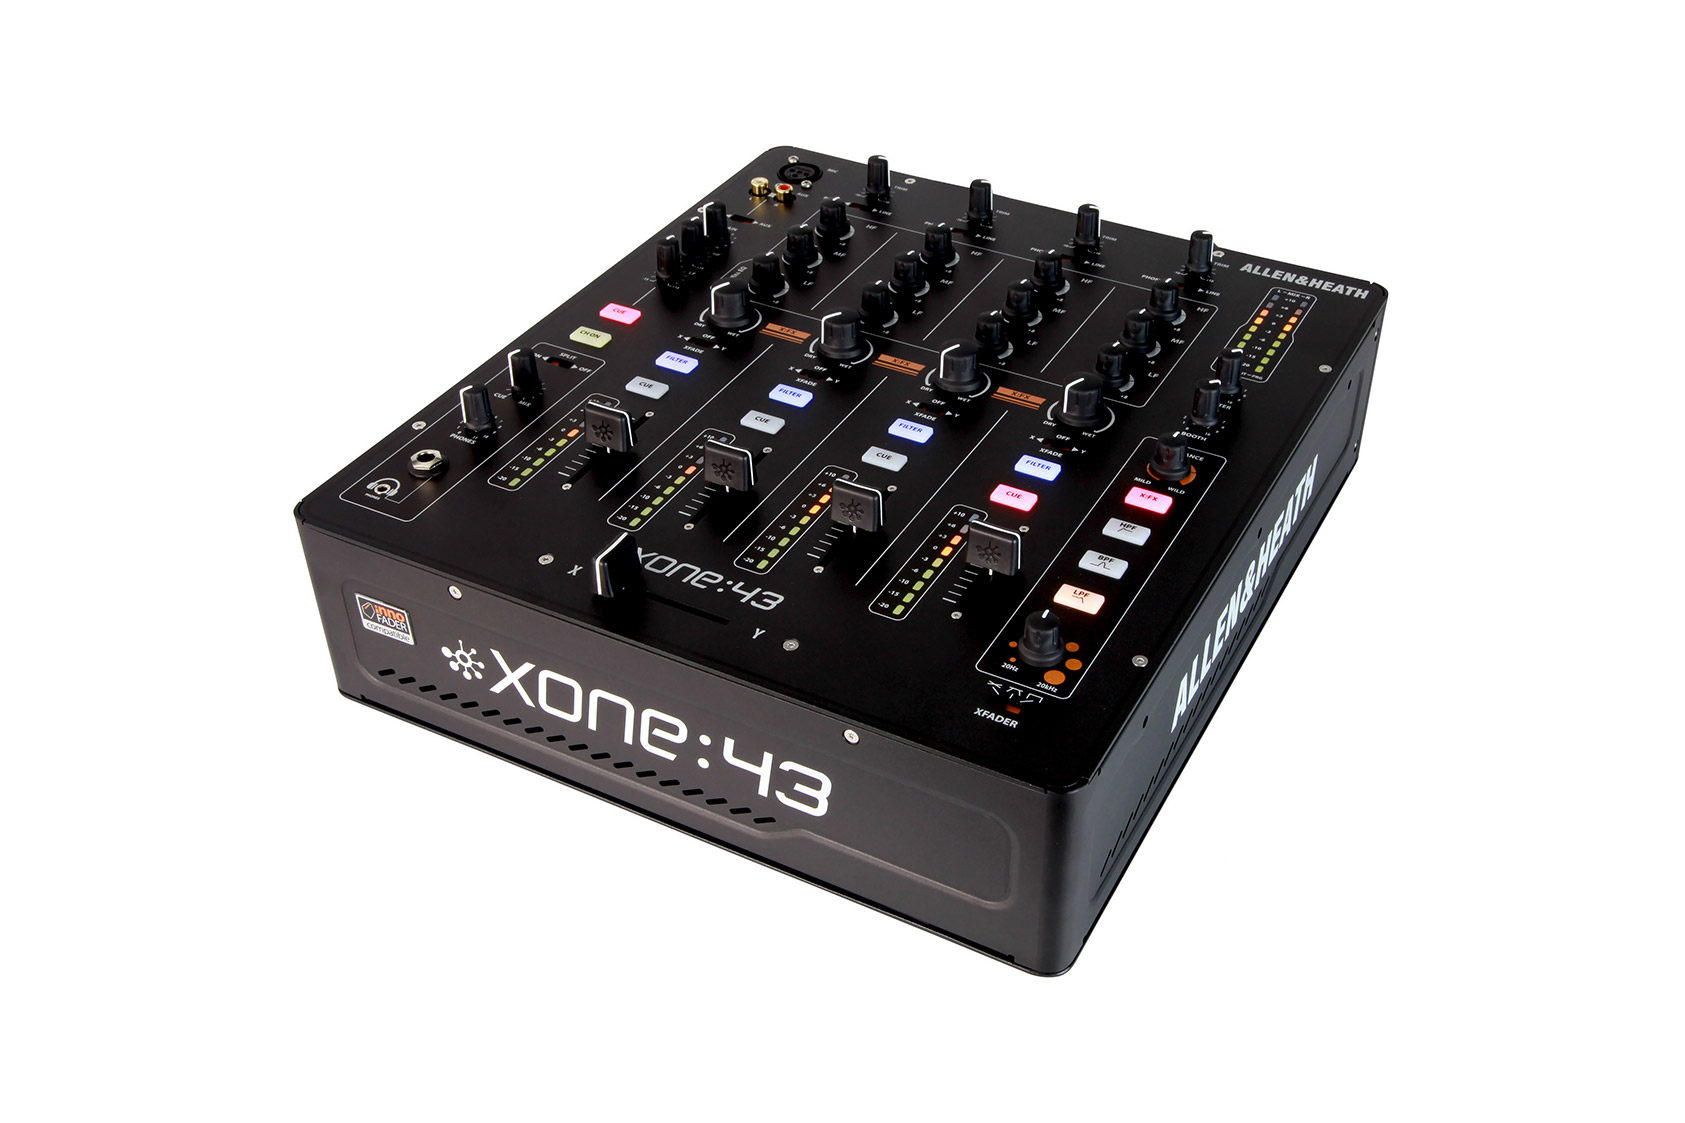  DJ Mixer  XONE 43 - Allen & Heath